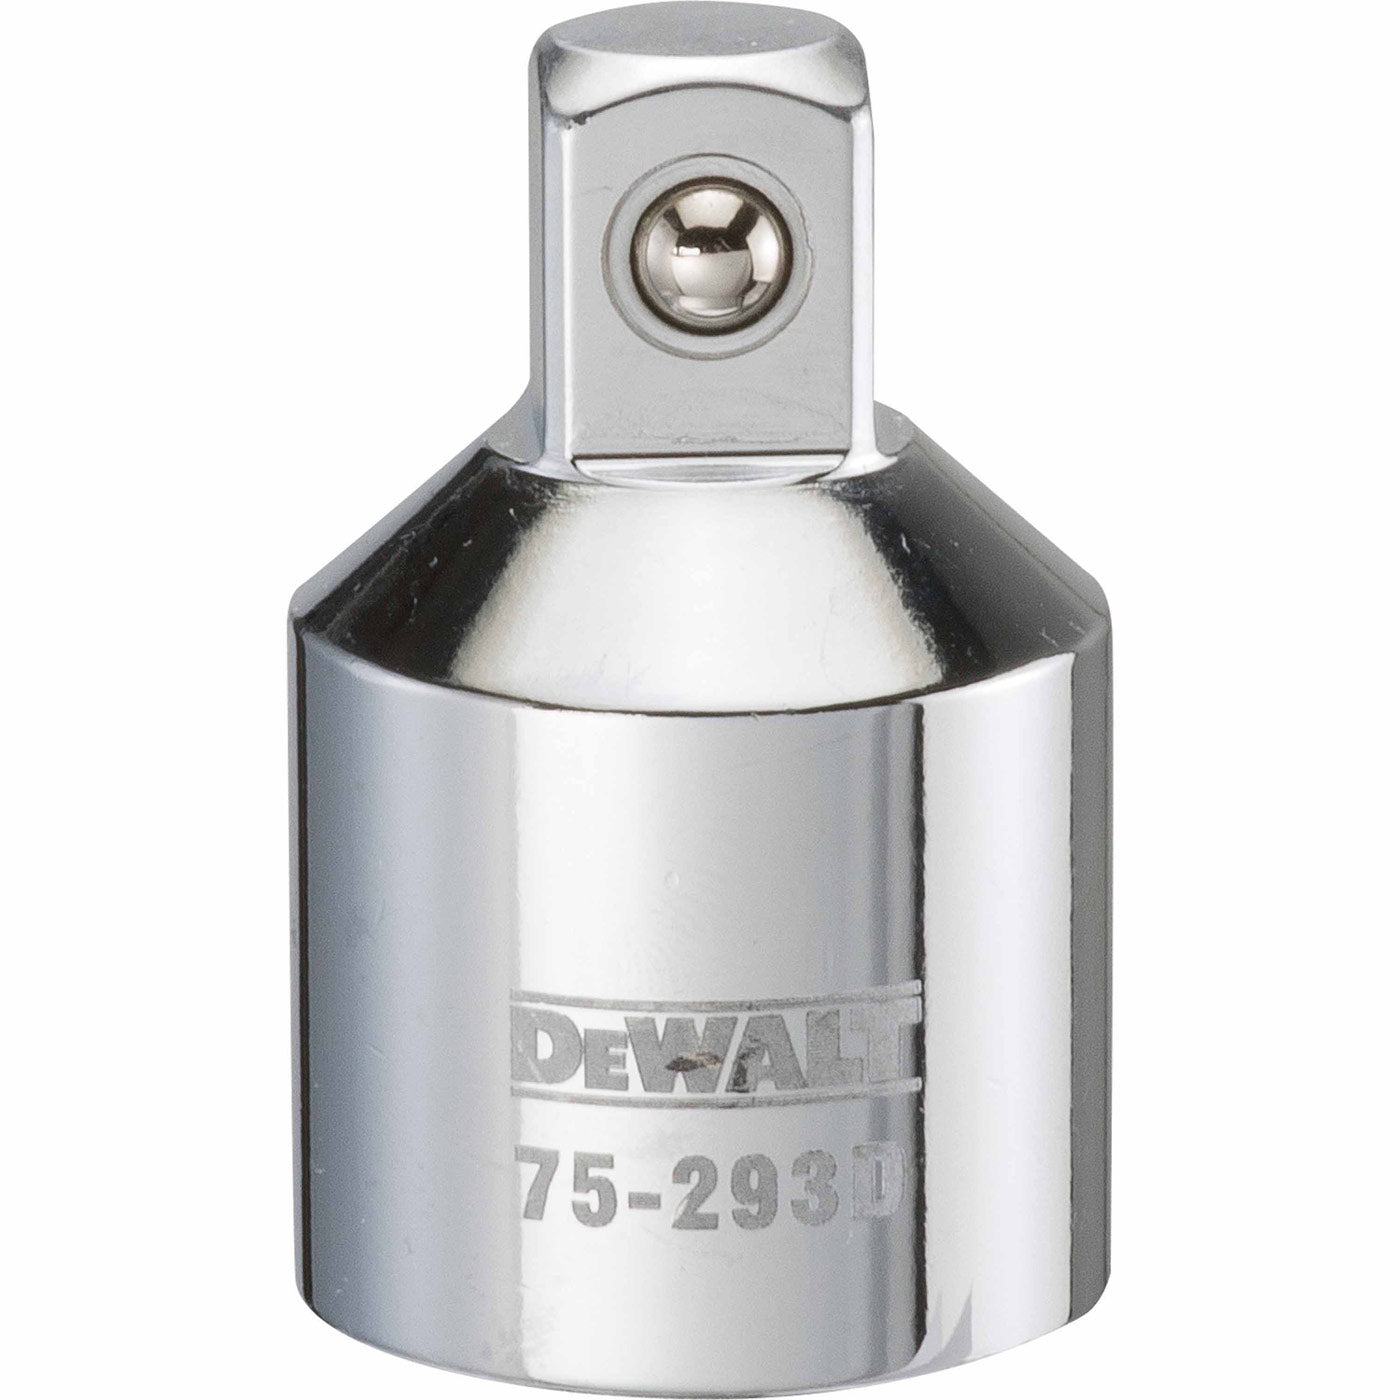 DeWalt DWMT75293OSP Mechanics 3/4" X 1/2" Reducing Adapter